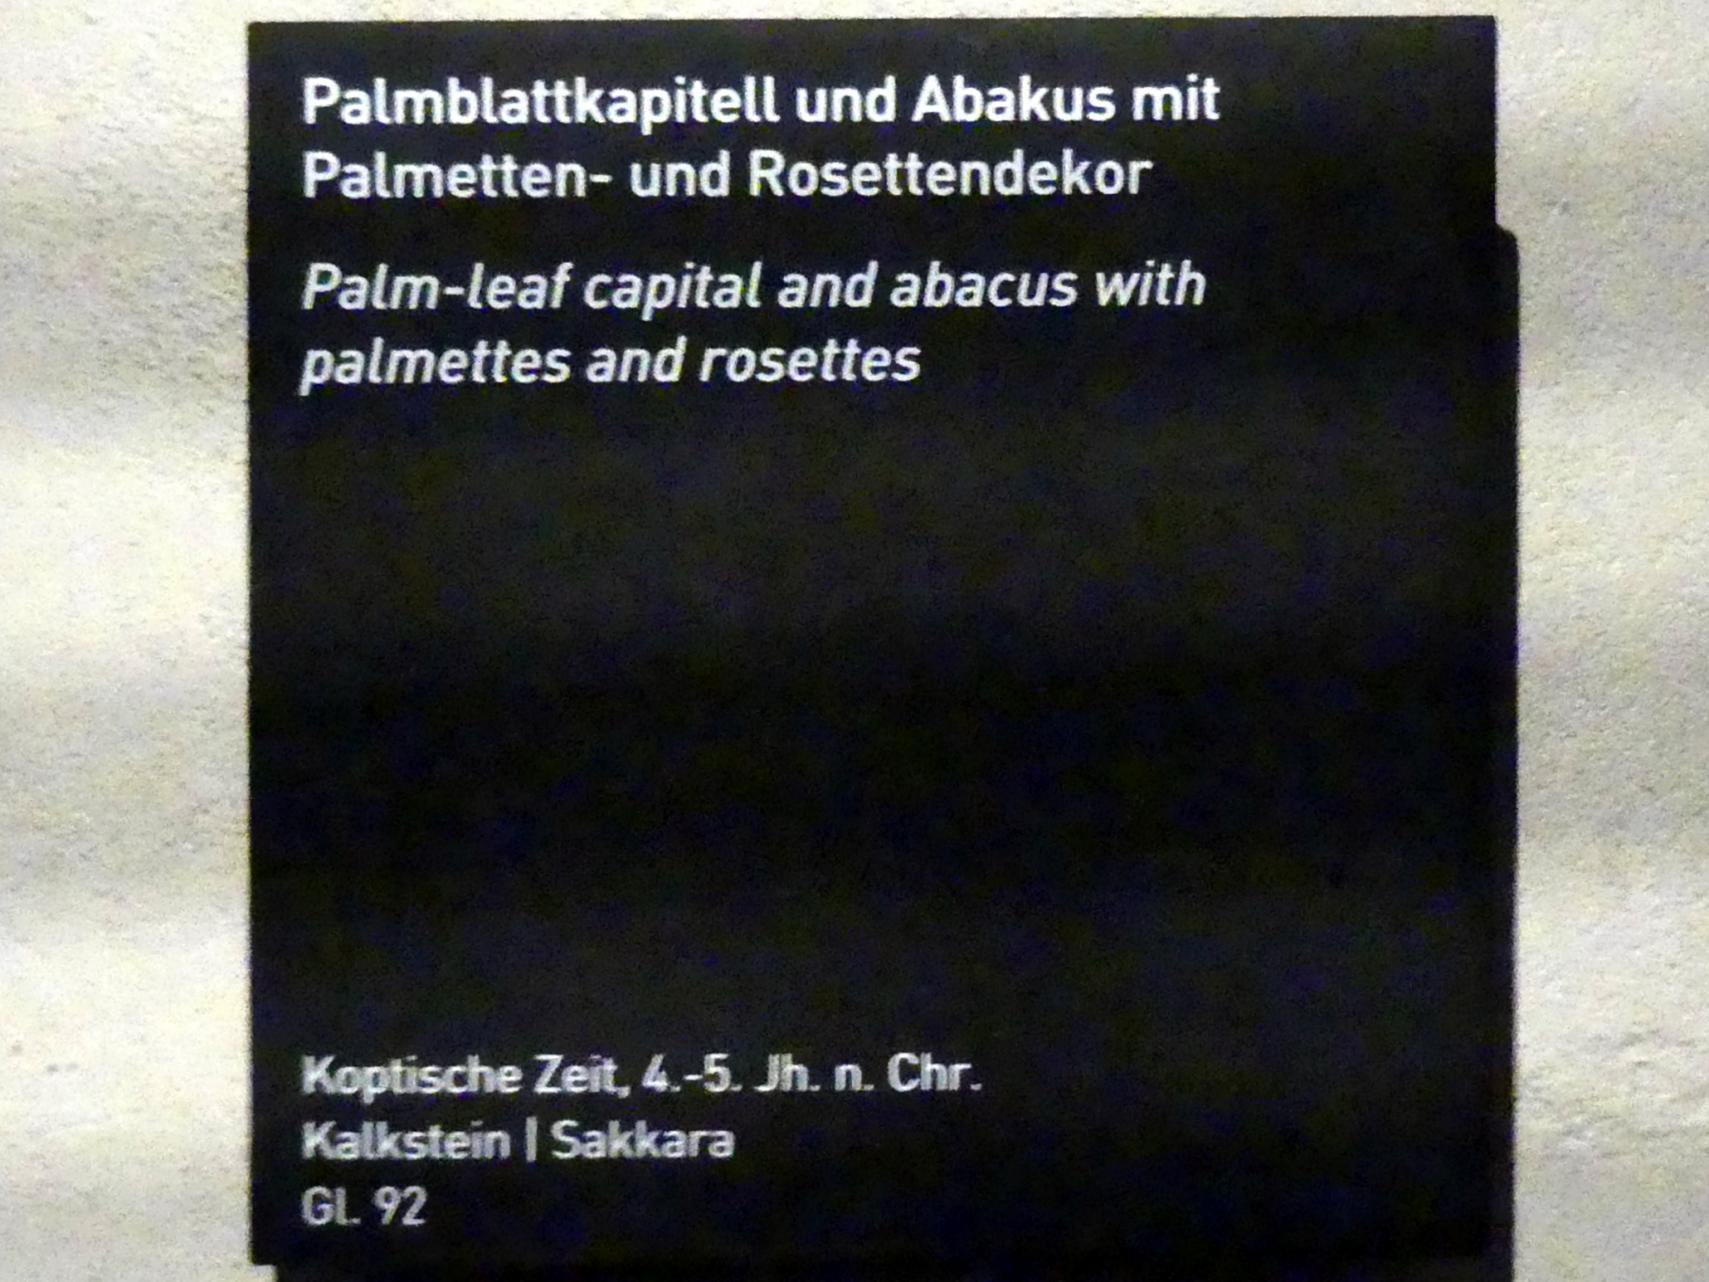 Palmblattkapitell und Abakus mit Palmetten- und Rosettendekor, Koptische Zeit, 200 - 800, 300 - 500, Bild 2/2